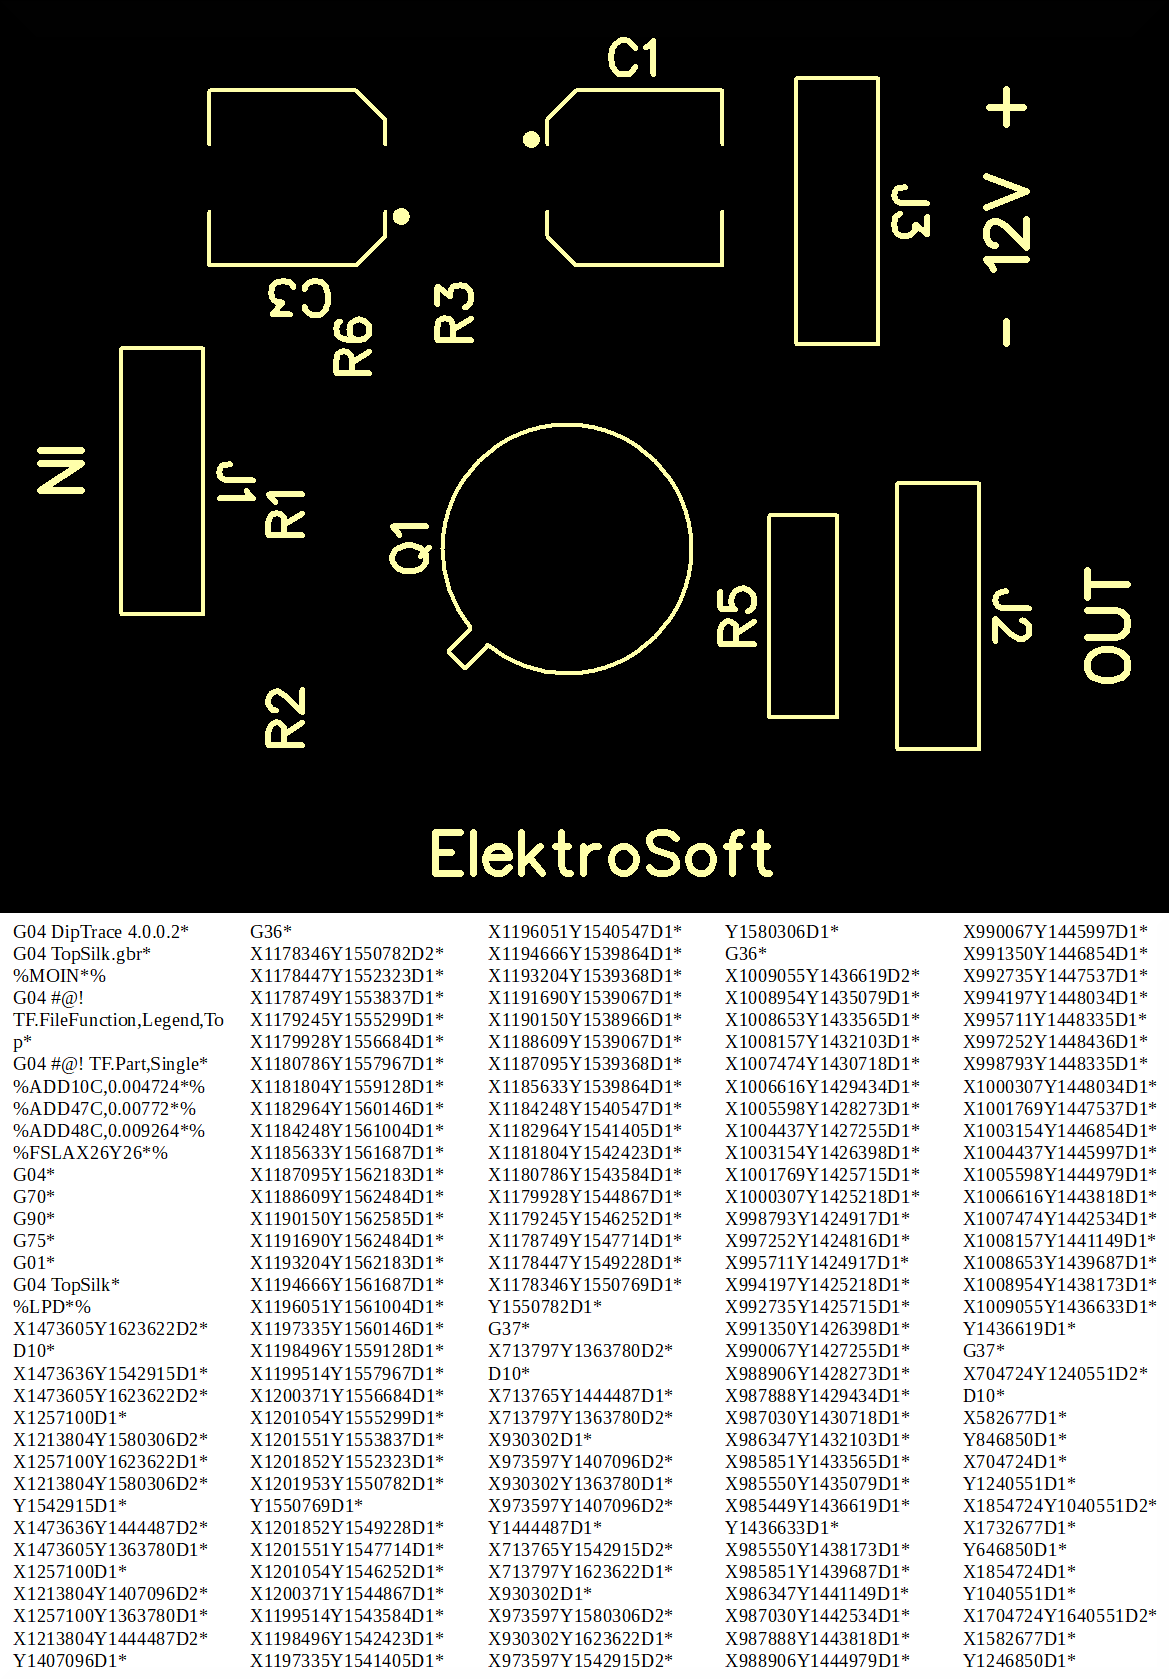 Top Silk-voorbeeldweergave samen met de tekstuele codering